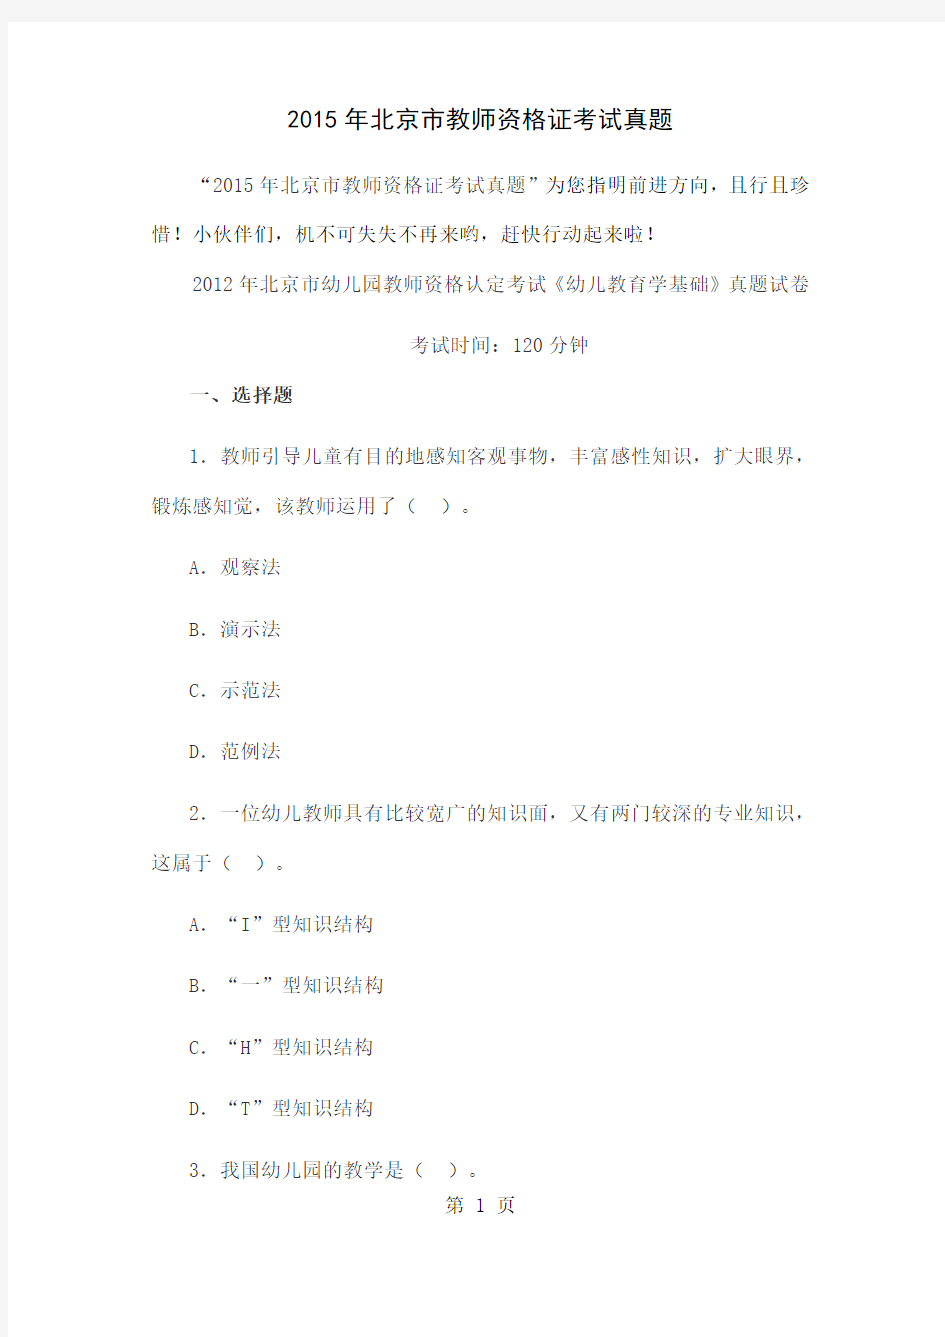 2019年北京市教师资格证考试备考真题15页